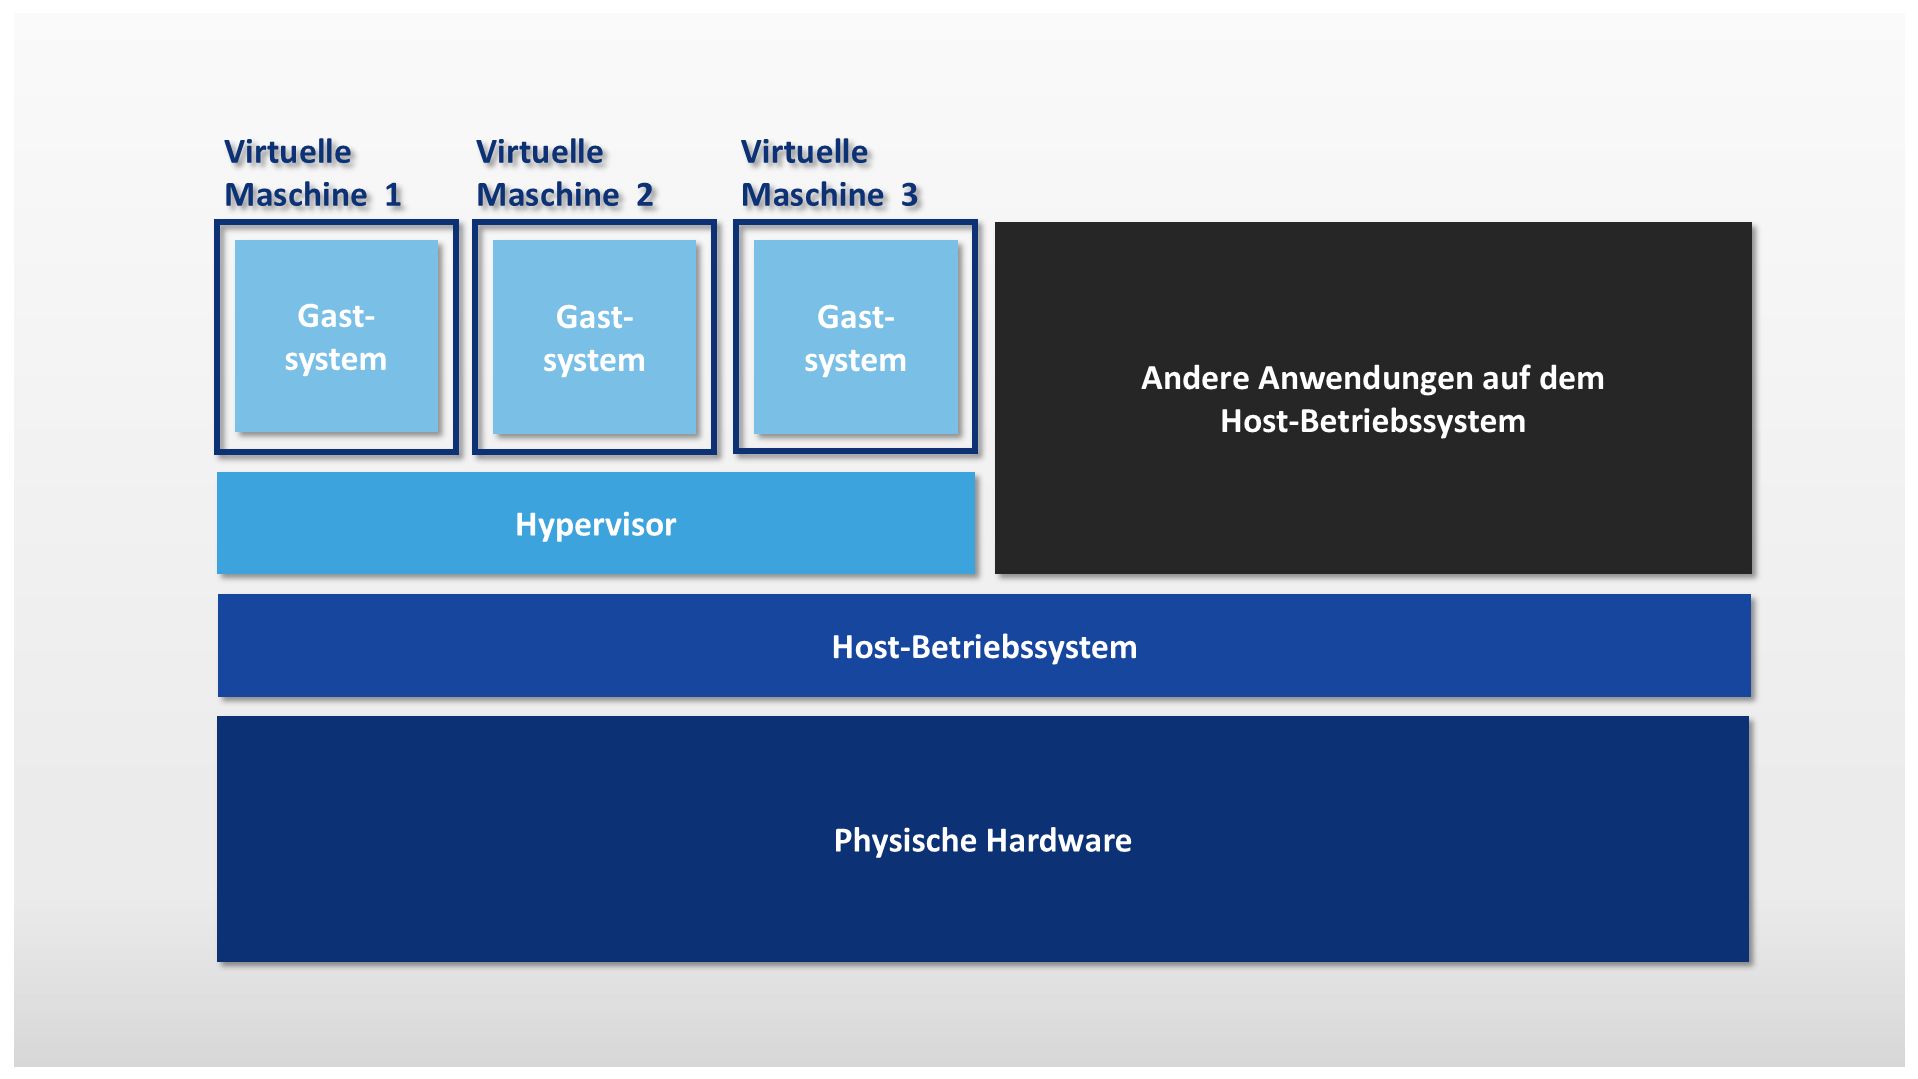 Rappresentazione schematica della virtualizzazione hardware basata su hypervisor